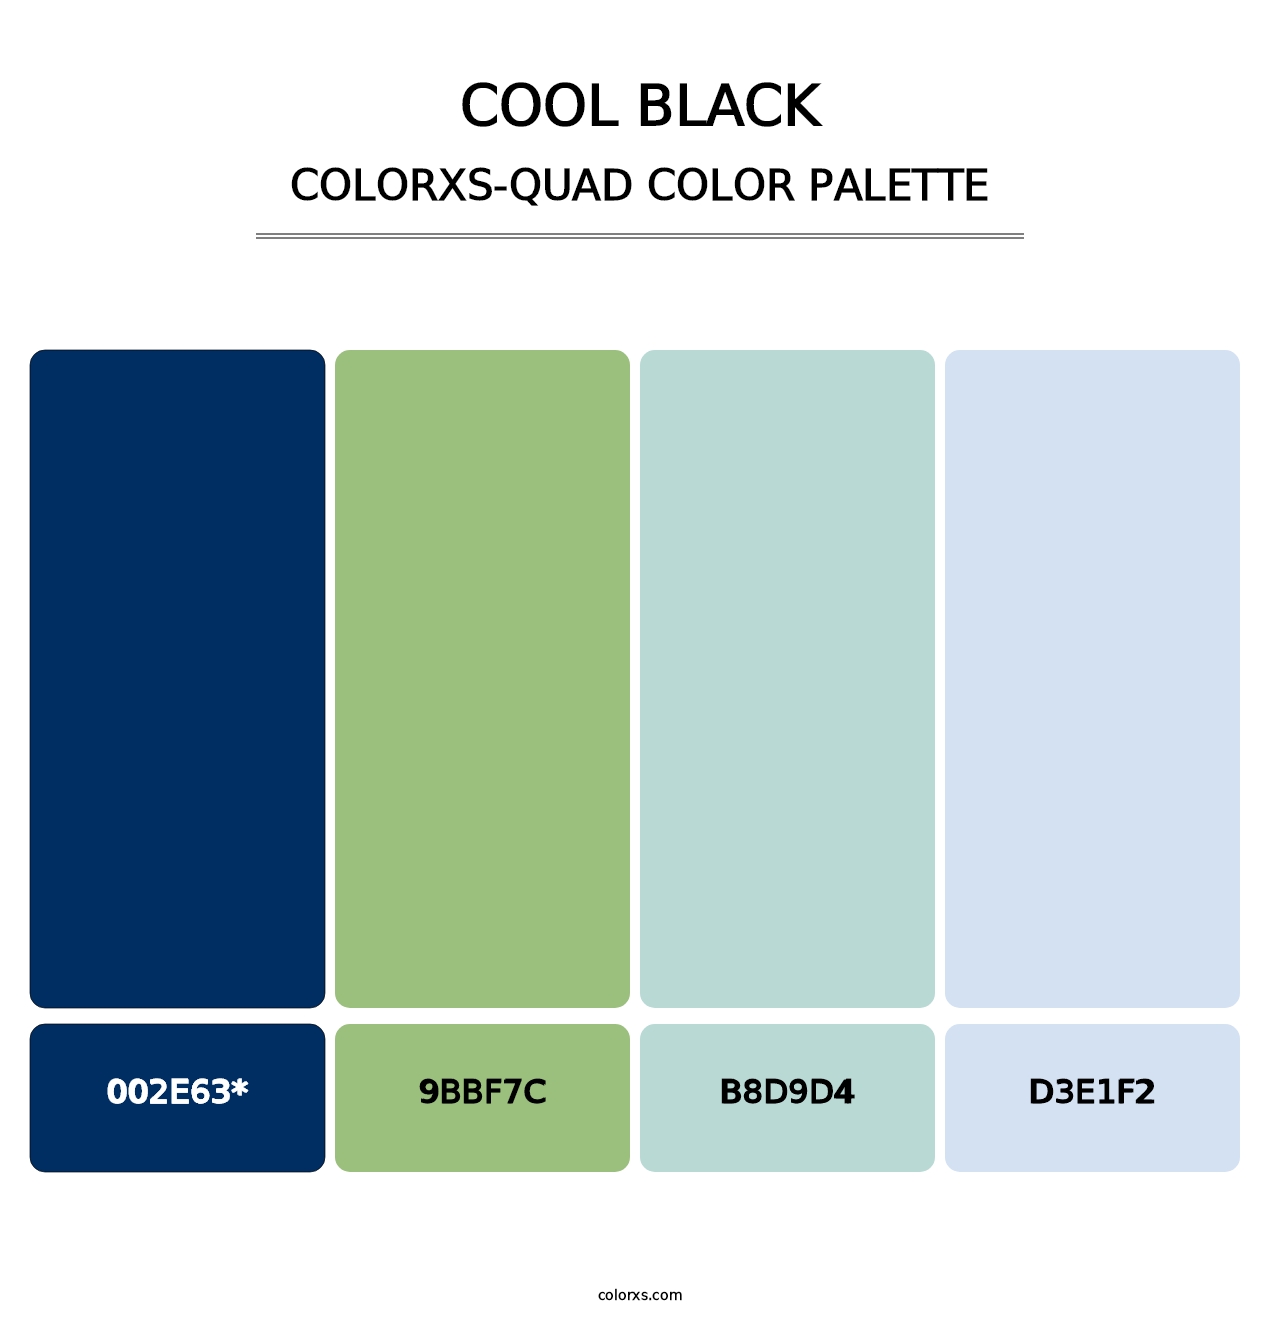 Cool Black - Colorxs Quad Palette